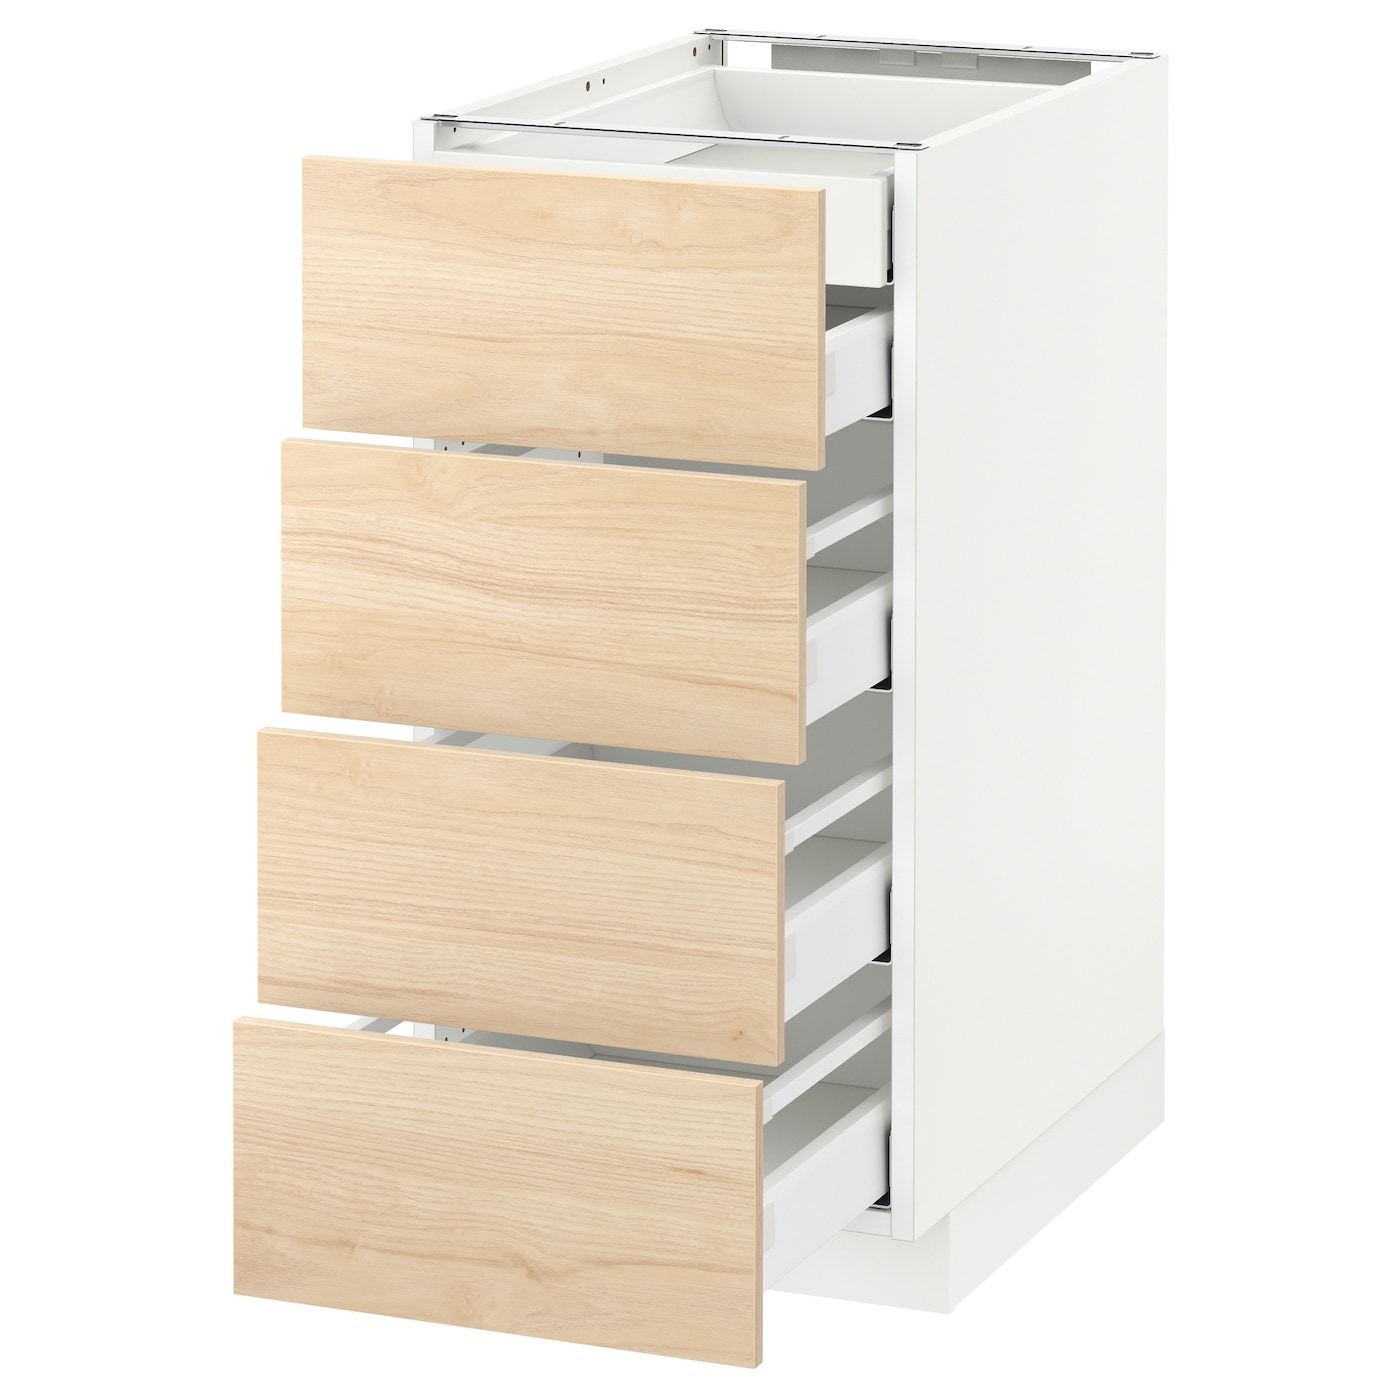 Напольный кухонный шкаф  - IKEA METOD MAXIMERA, 80x61,6x40см, белый/светло-коричневый, МЕТОД МАКСИМЕРА ИКЕА